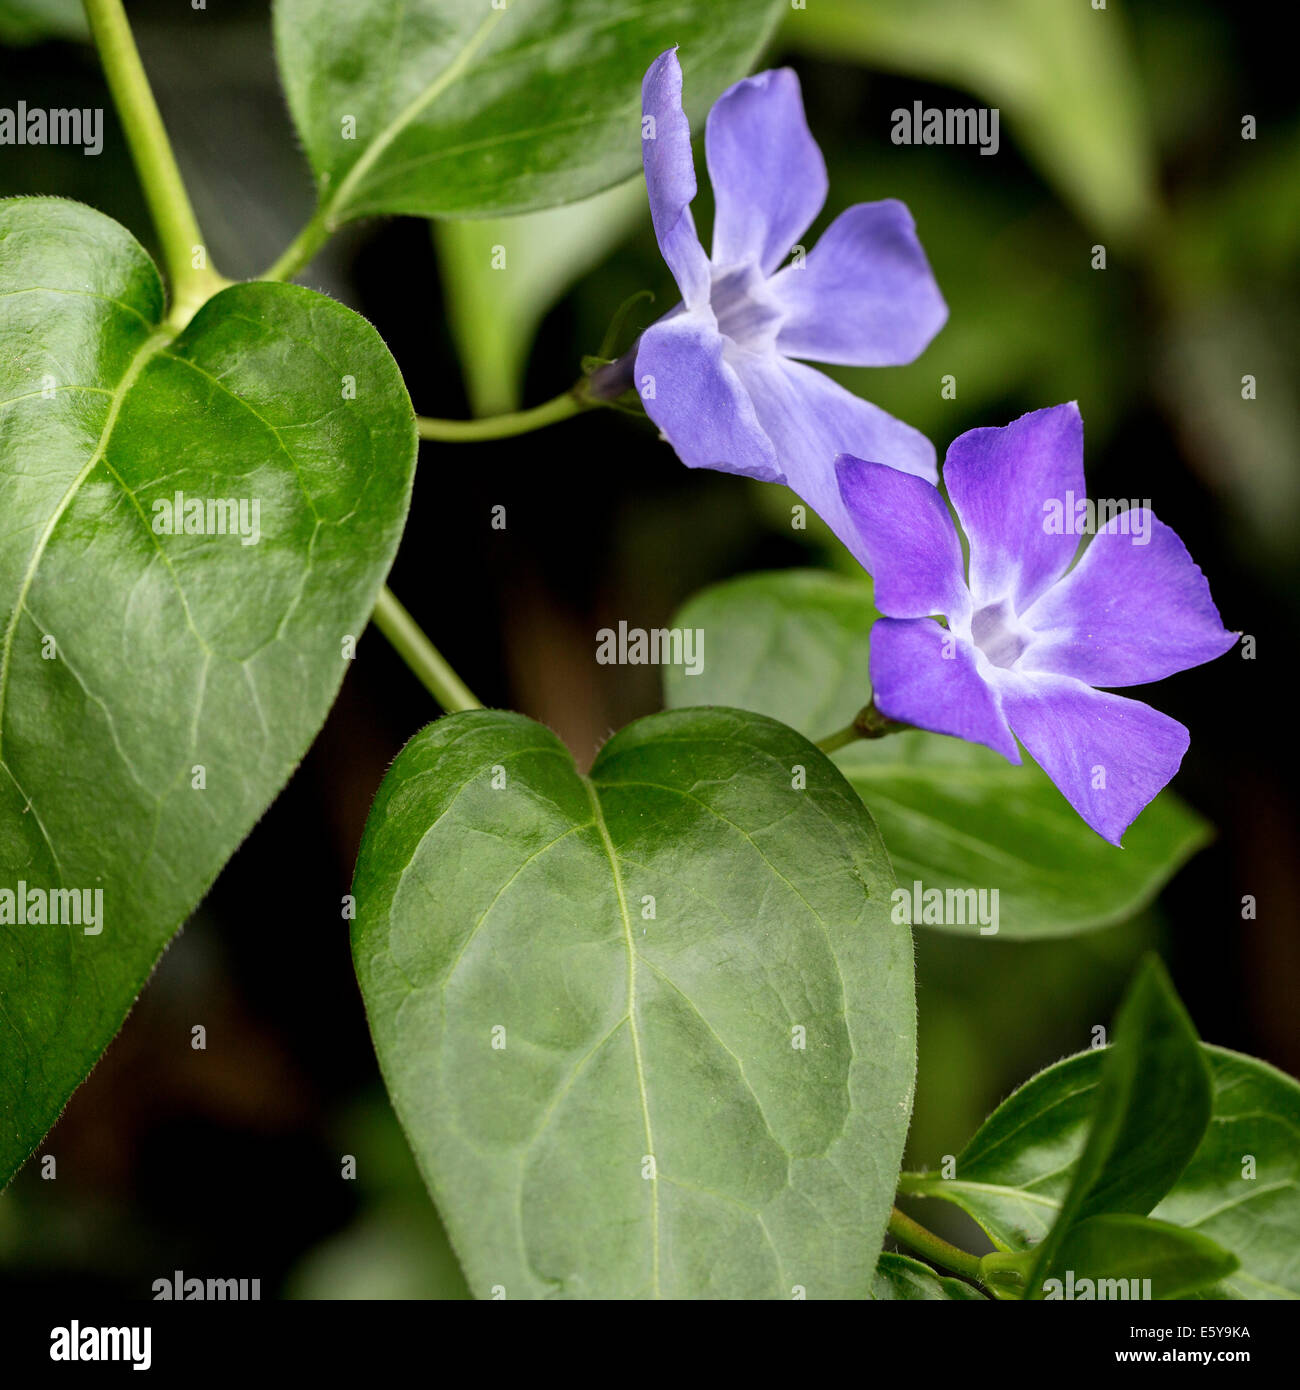 Bigleaf periwinkle / large periwinkle / greater periwinkle / blue periwinkle (Vinca major) in flower Stock Photo